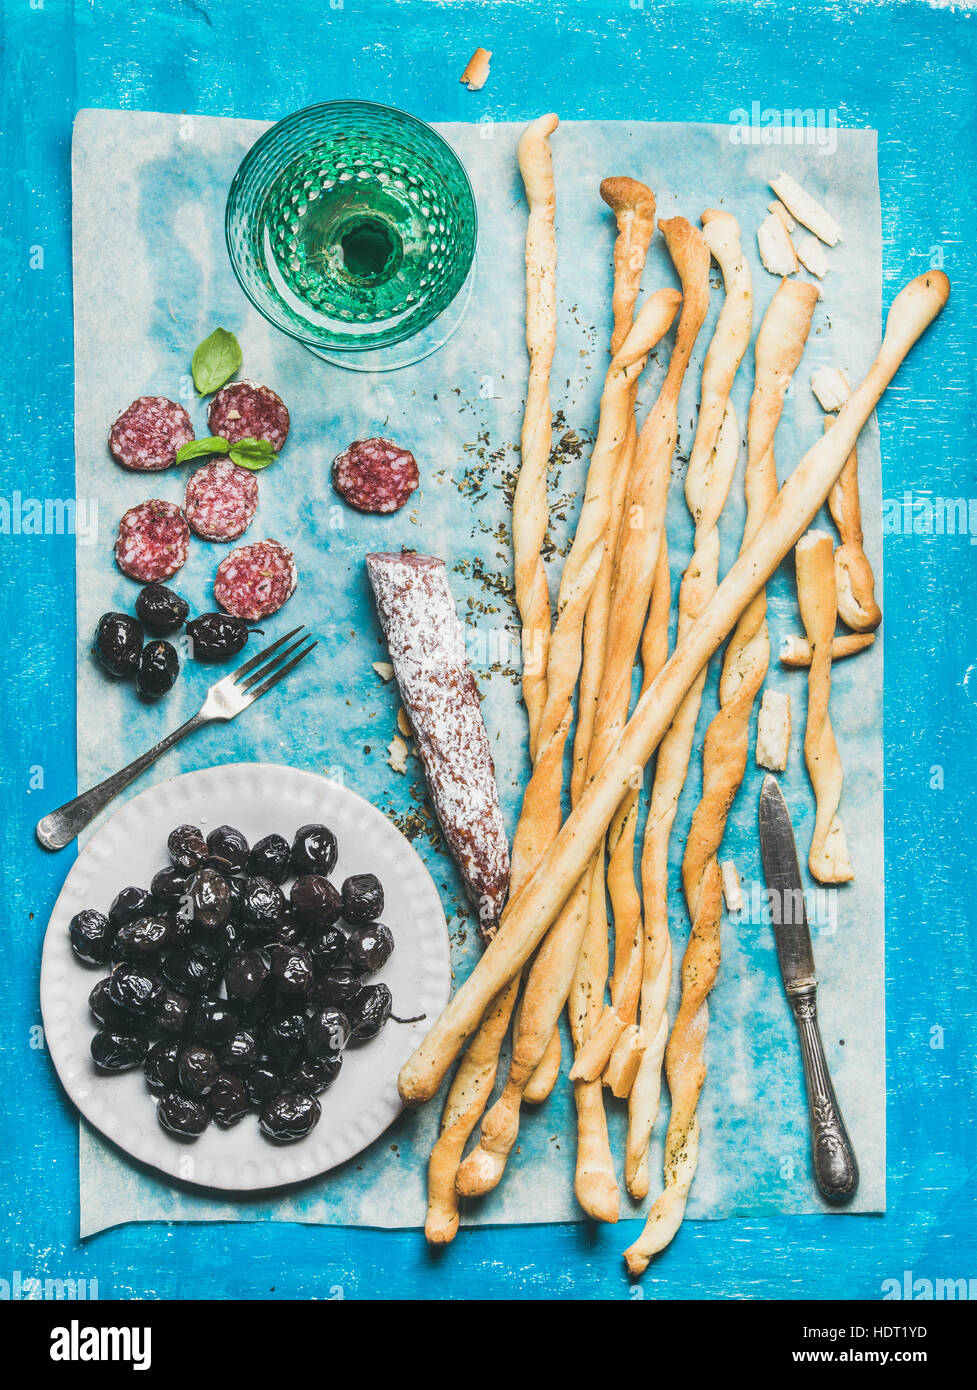 Grissini-Brot-sticks, Wurst, Oliven und Wein, blauer Hintergrund Stockfoto